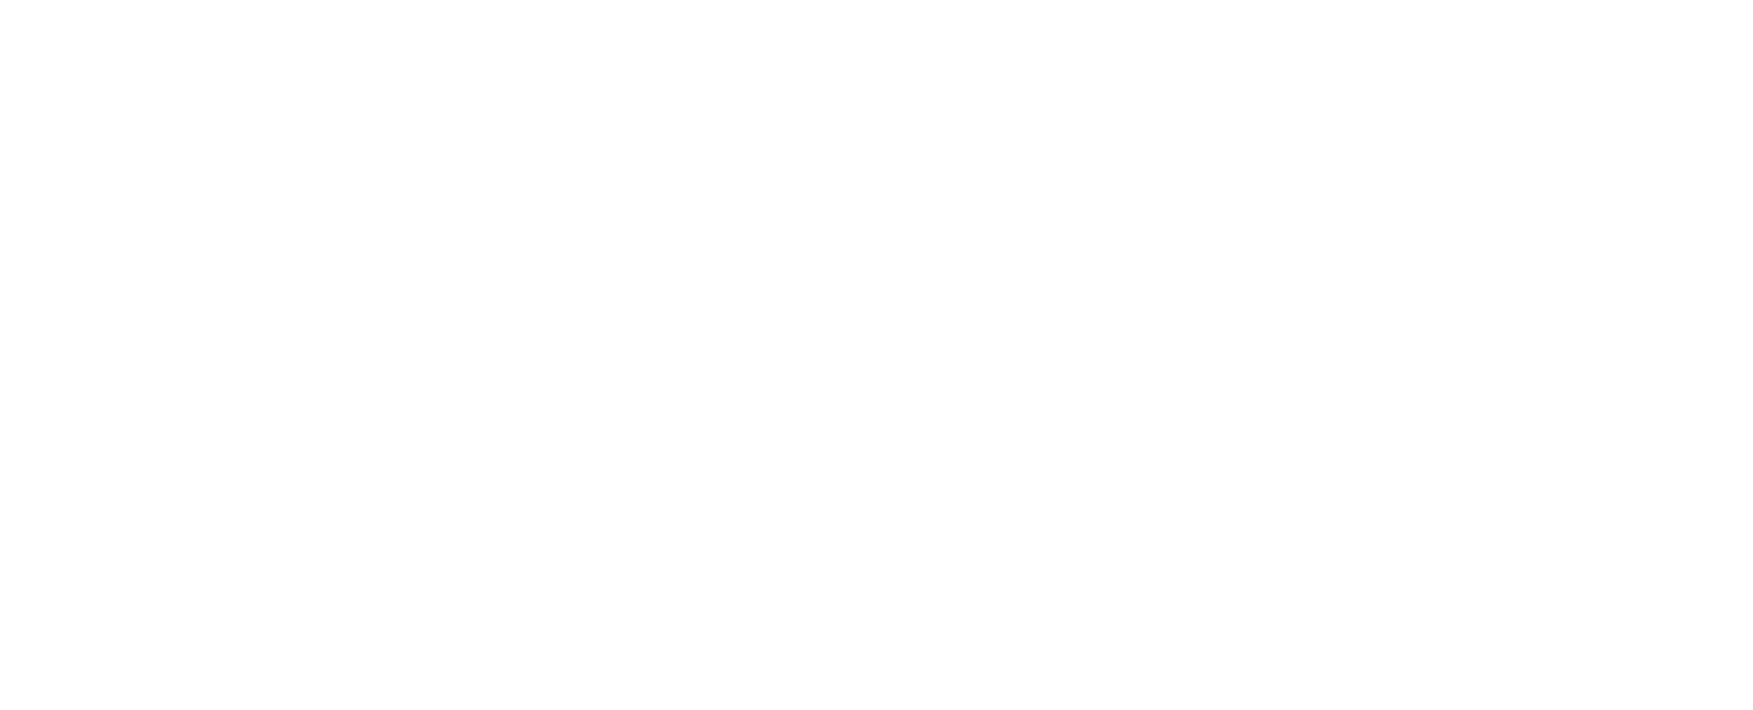 Barcelona Capital Cultural